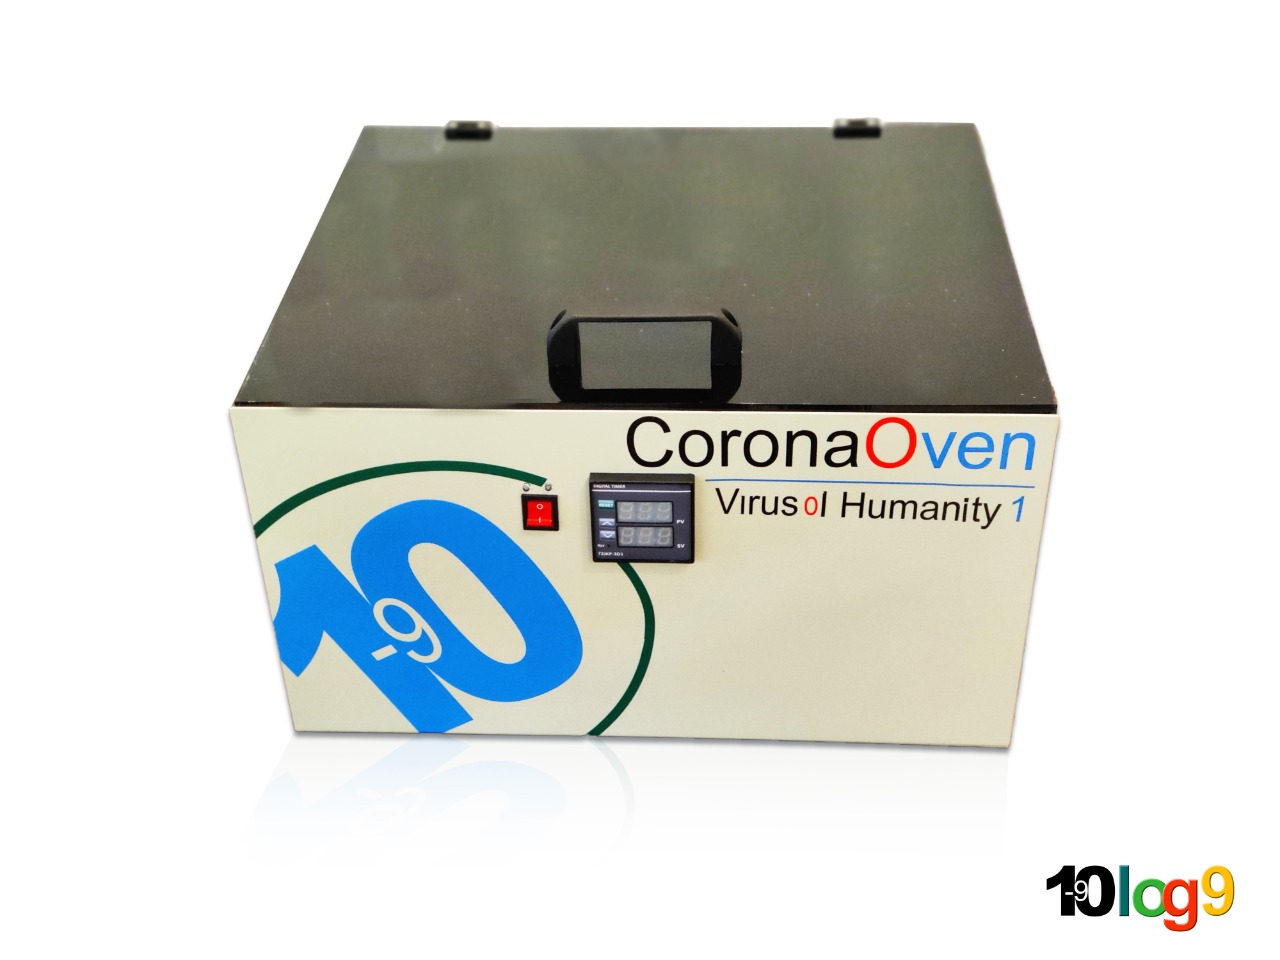 Corona Oven - UV disinfection chamber